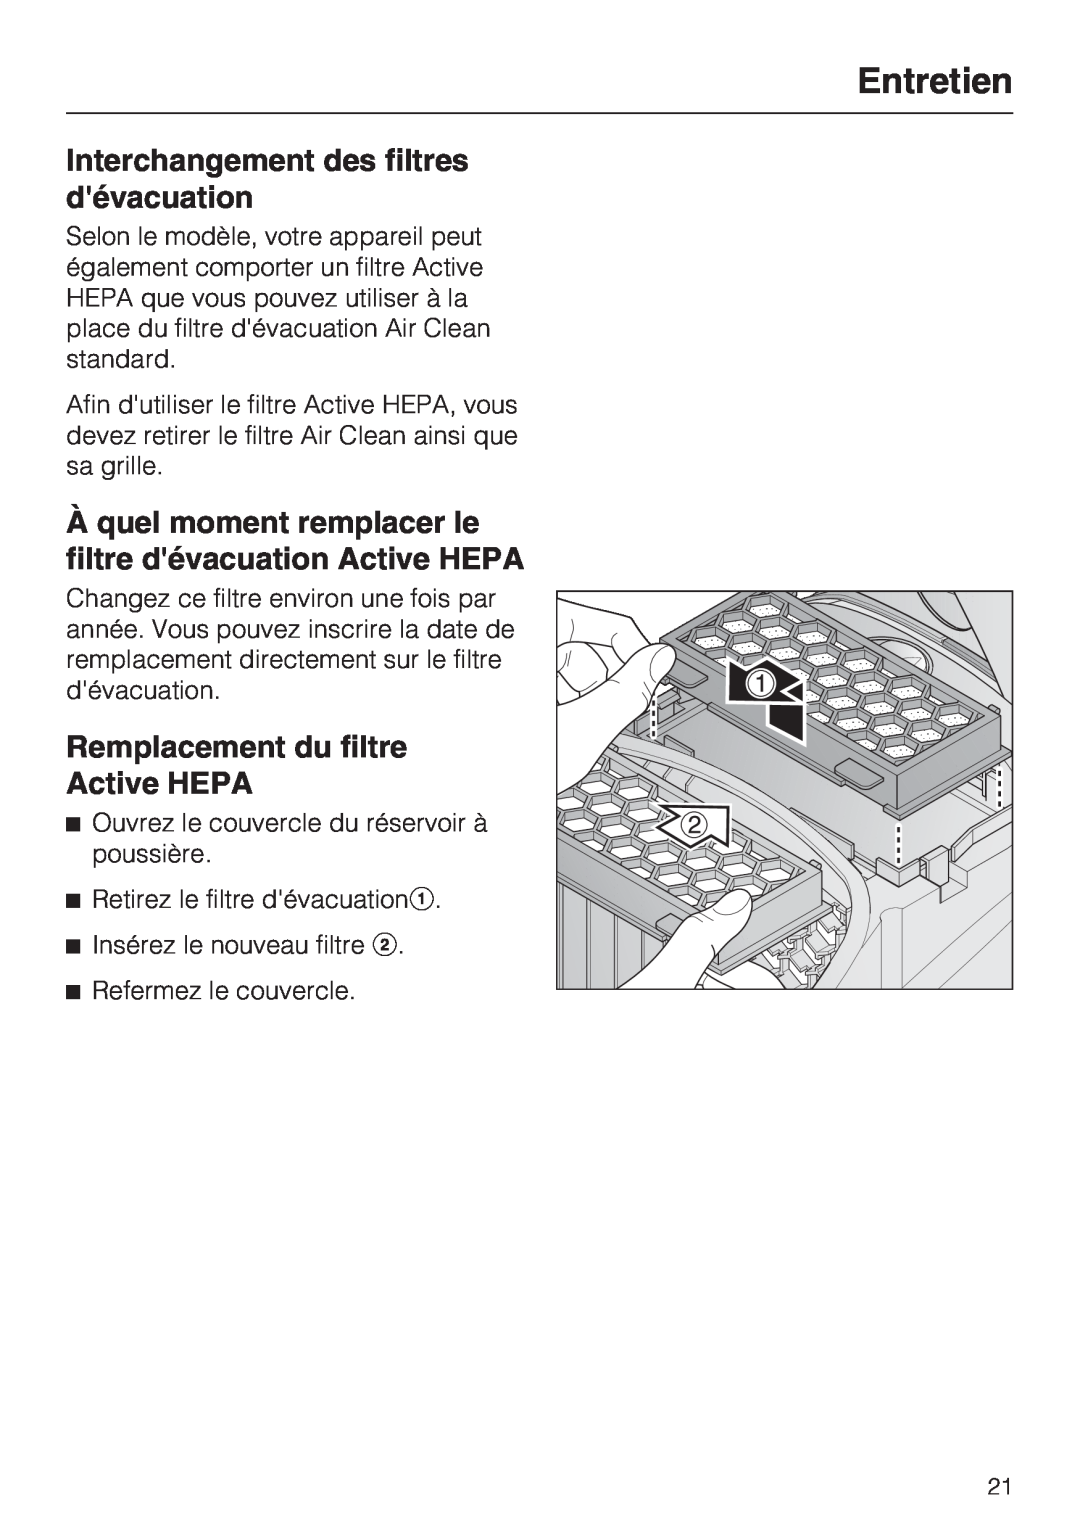 Miele S 2120, S 2000, HS12 manual Interchangement des filtres dévacuation, Remplacement du filtre Active HEPA, Entretien 